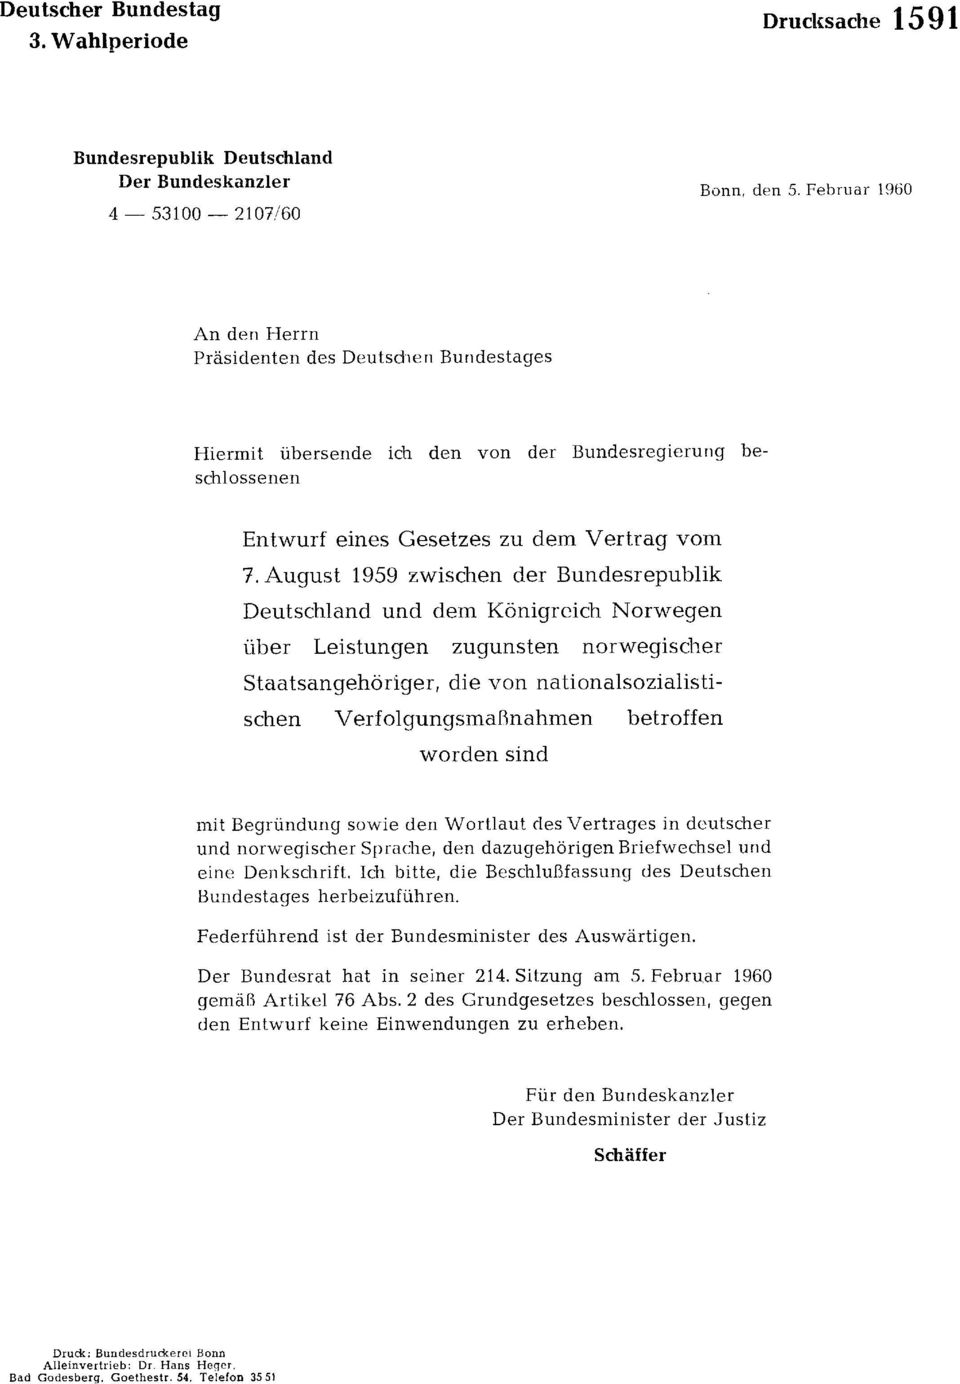 August 1959 zwischen der Bundesrepublik Deutschland und dem Königreich Norwegen über Leistungen zugunsten norwegischer Staatsangehöriger, die von nationalsozialisti schen Verfolgungsmaßnahmen